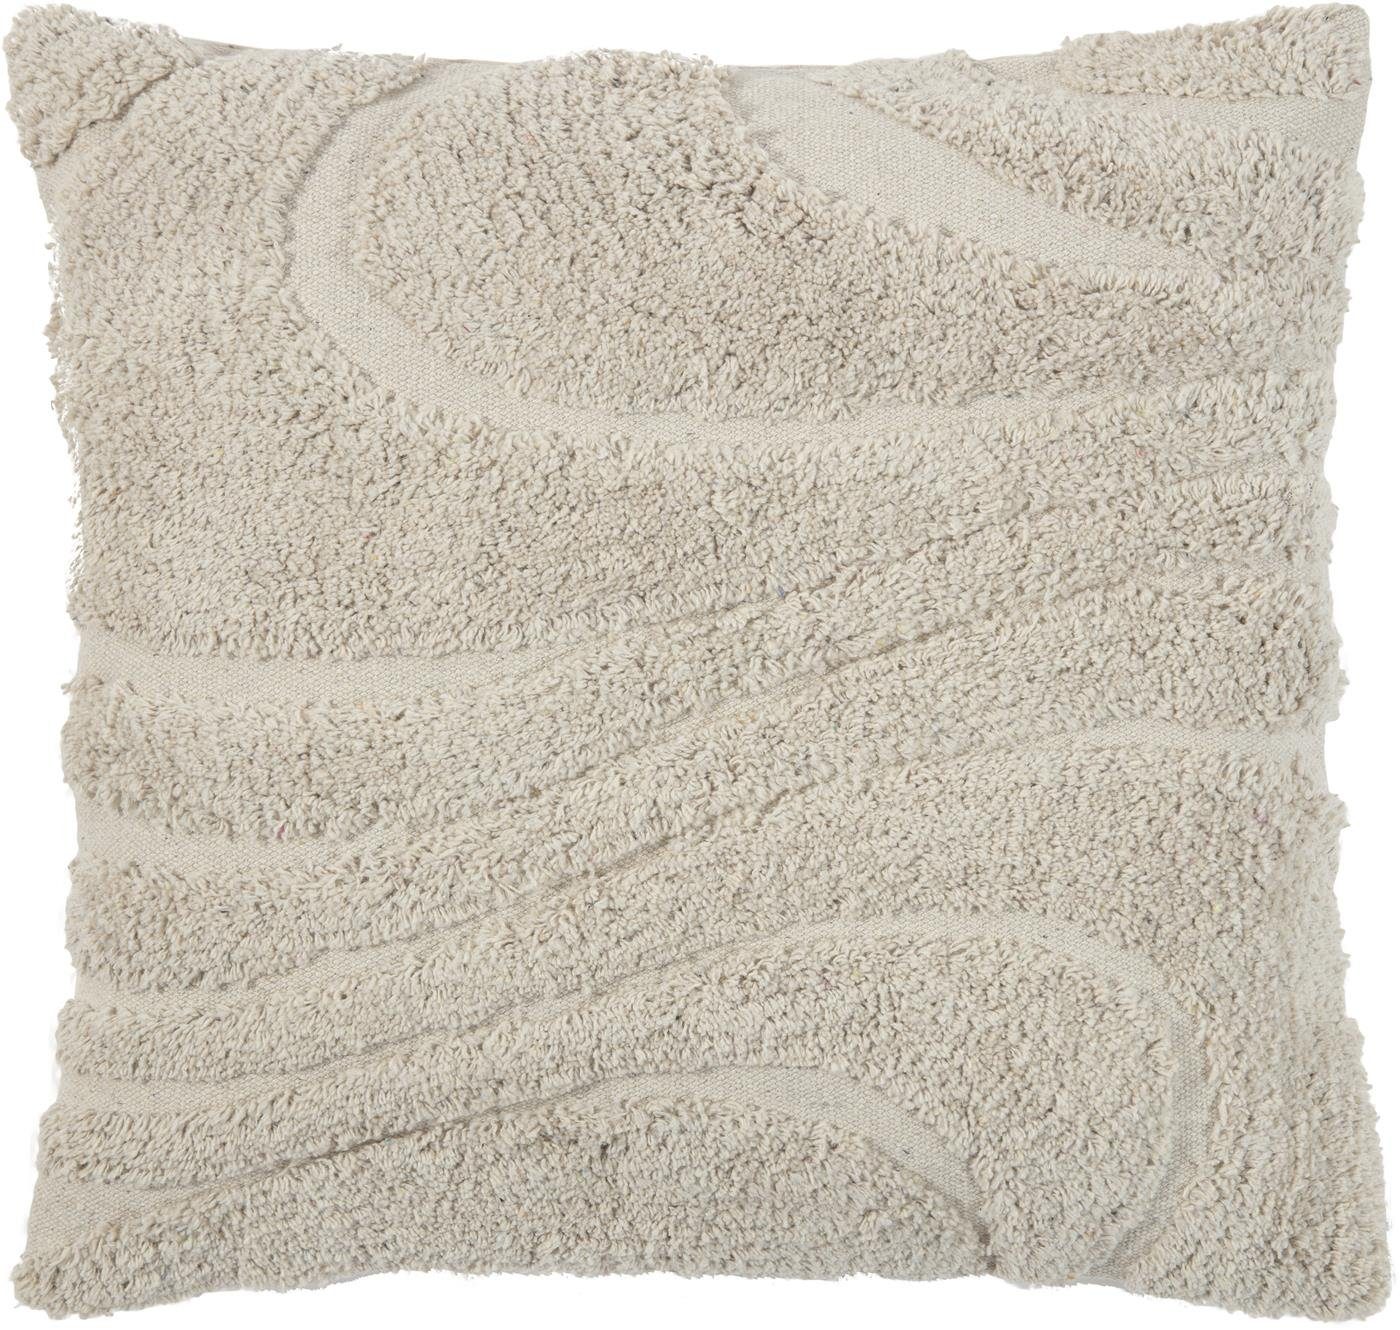 Kissenhülle Otomi mit getuftem Muster Baumwolle 45x45cm natürliches Wohndesign, Magma Heimtex (1 Stück), verdeckter Reißverschluss mittig auf der Rückseite